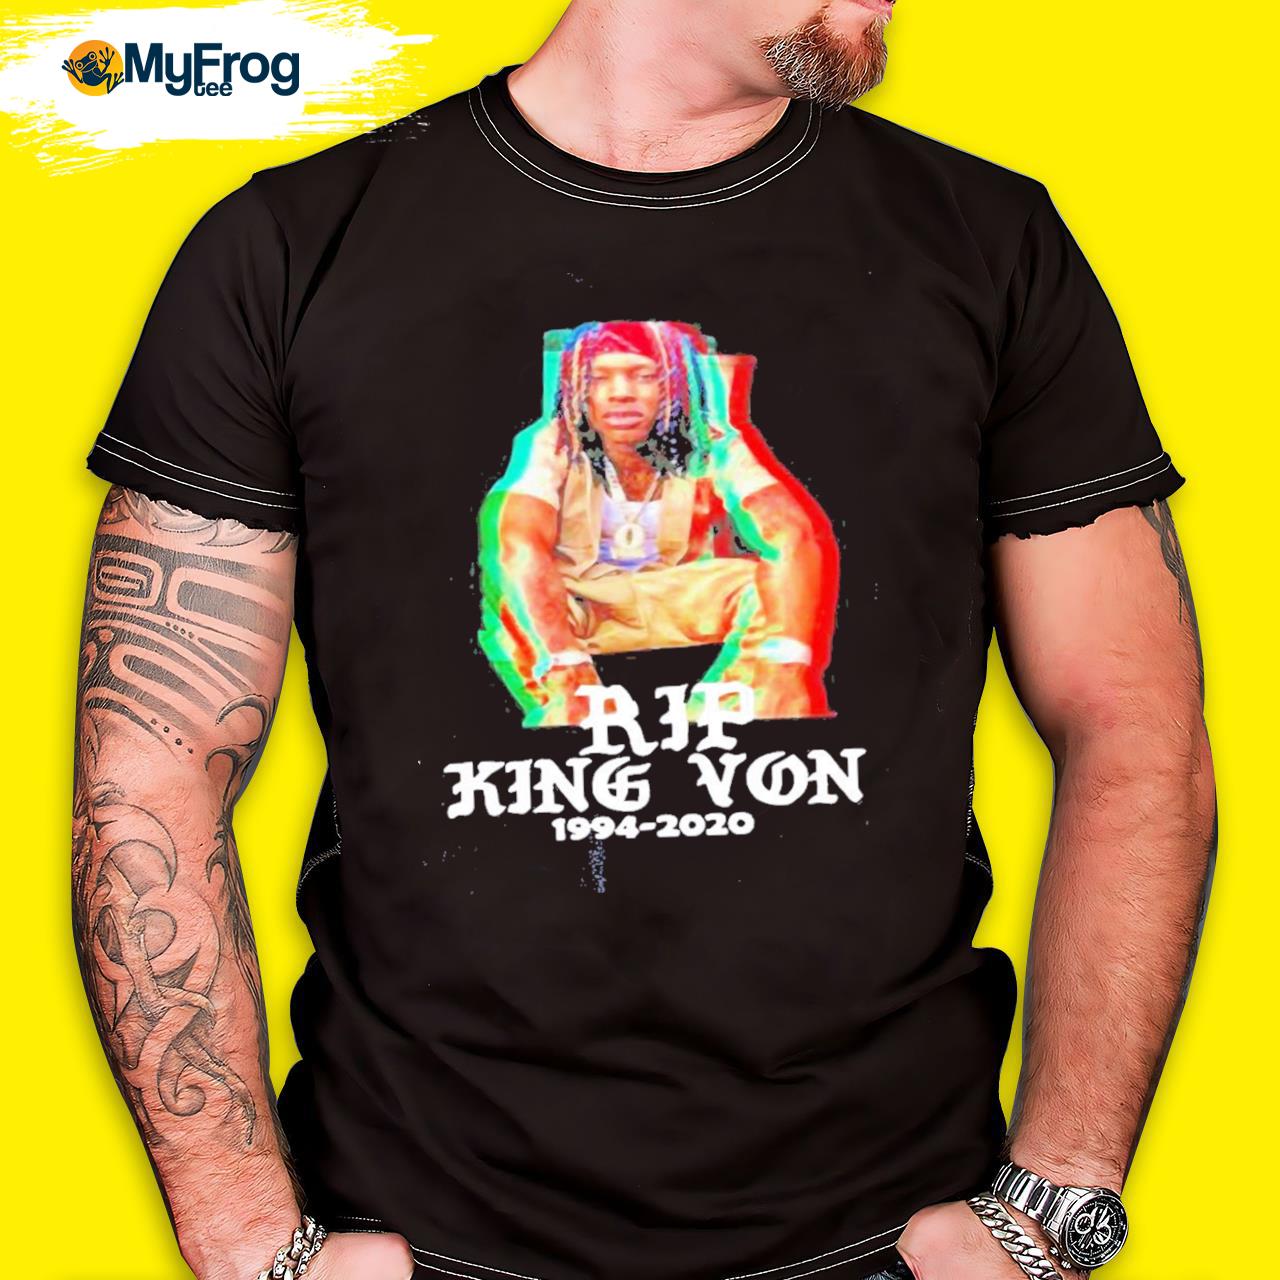 King Von RIP T-Shirt